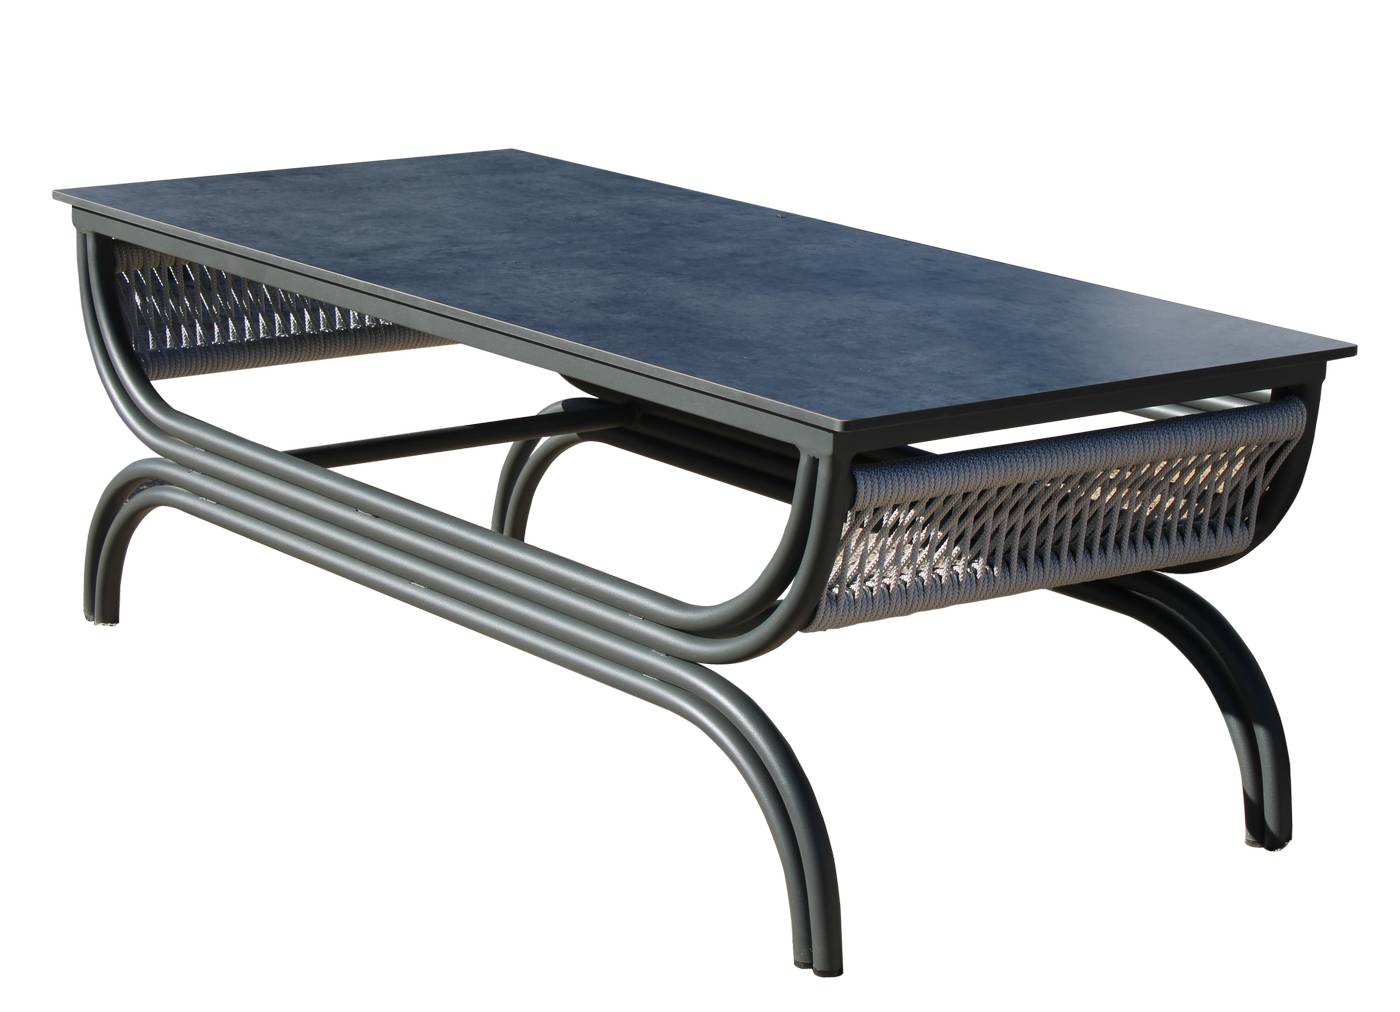 Set Aluminio Saona-10 - Conjunto de alumino y cuerda: sofá de 3 plazas + 2 sillones + 1 mesa de centro + 2 reposapiés. Colores: blanco, antracita, marrón, champagne o plata.